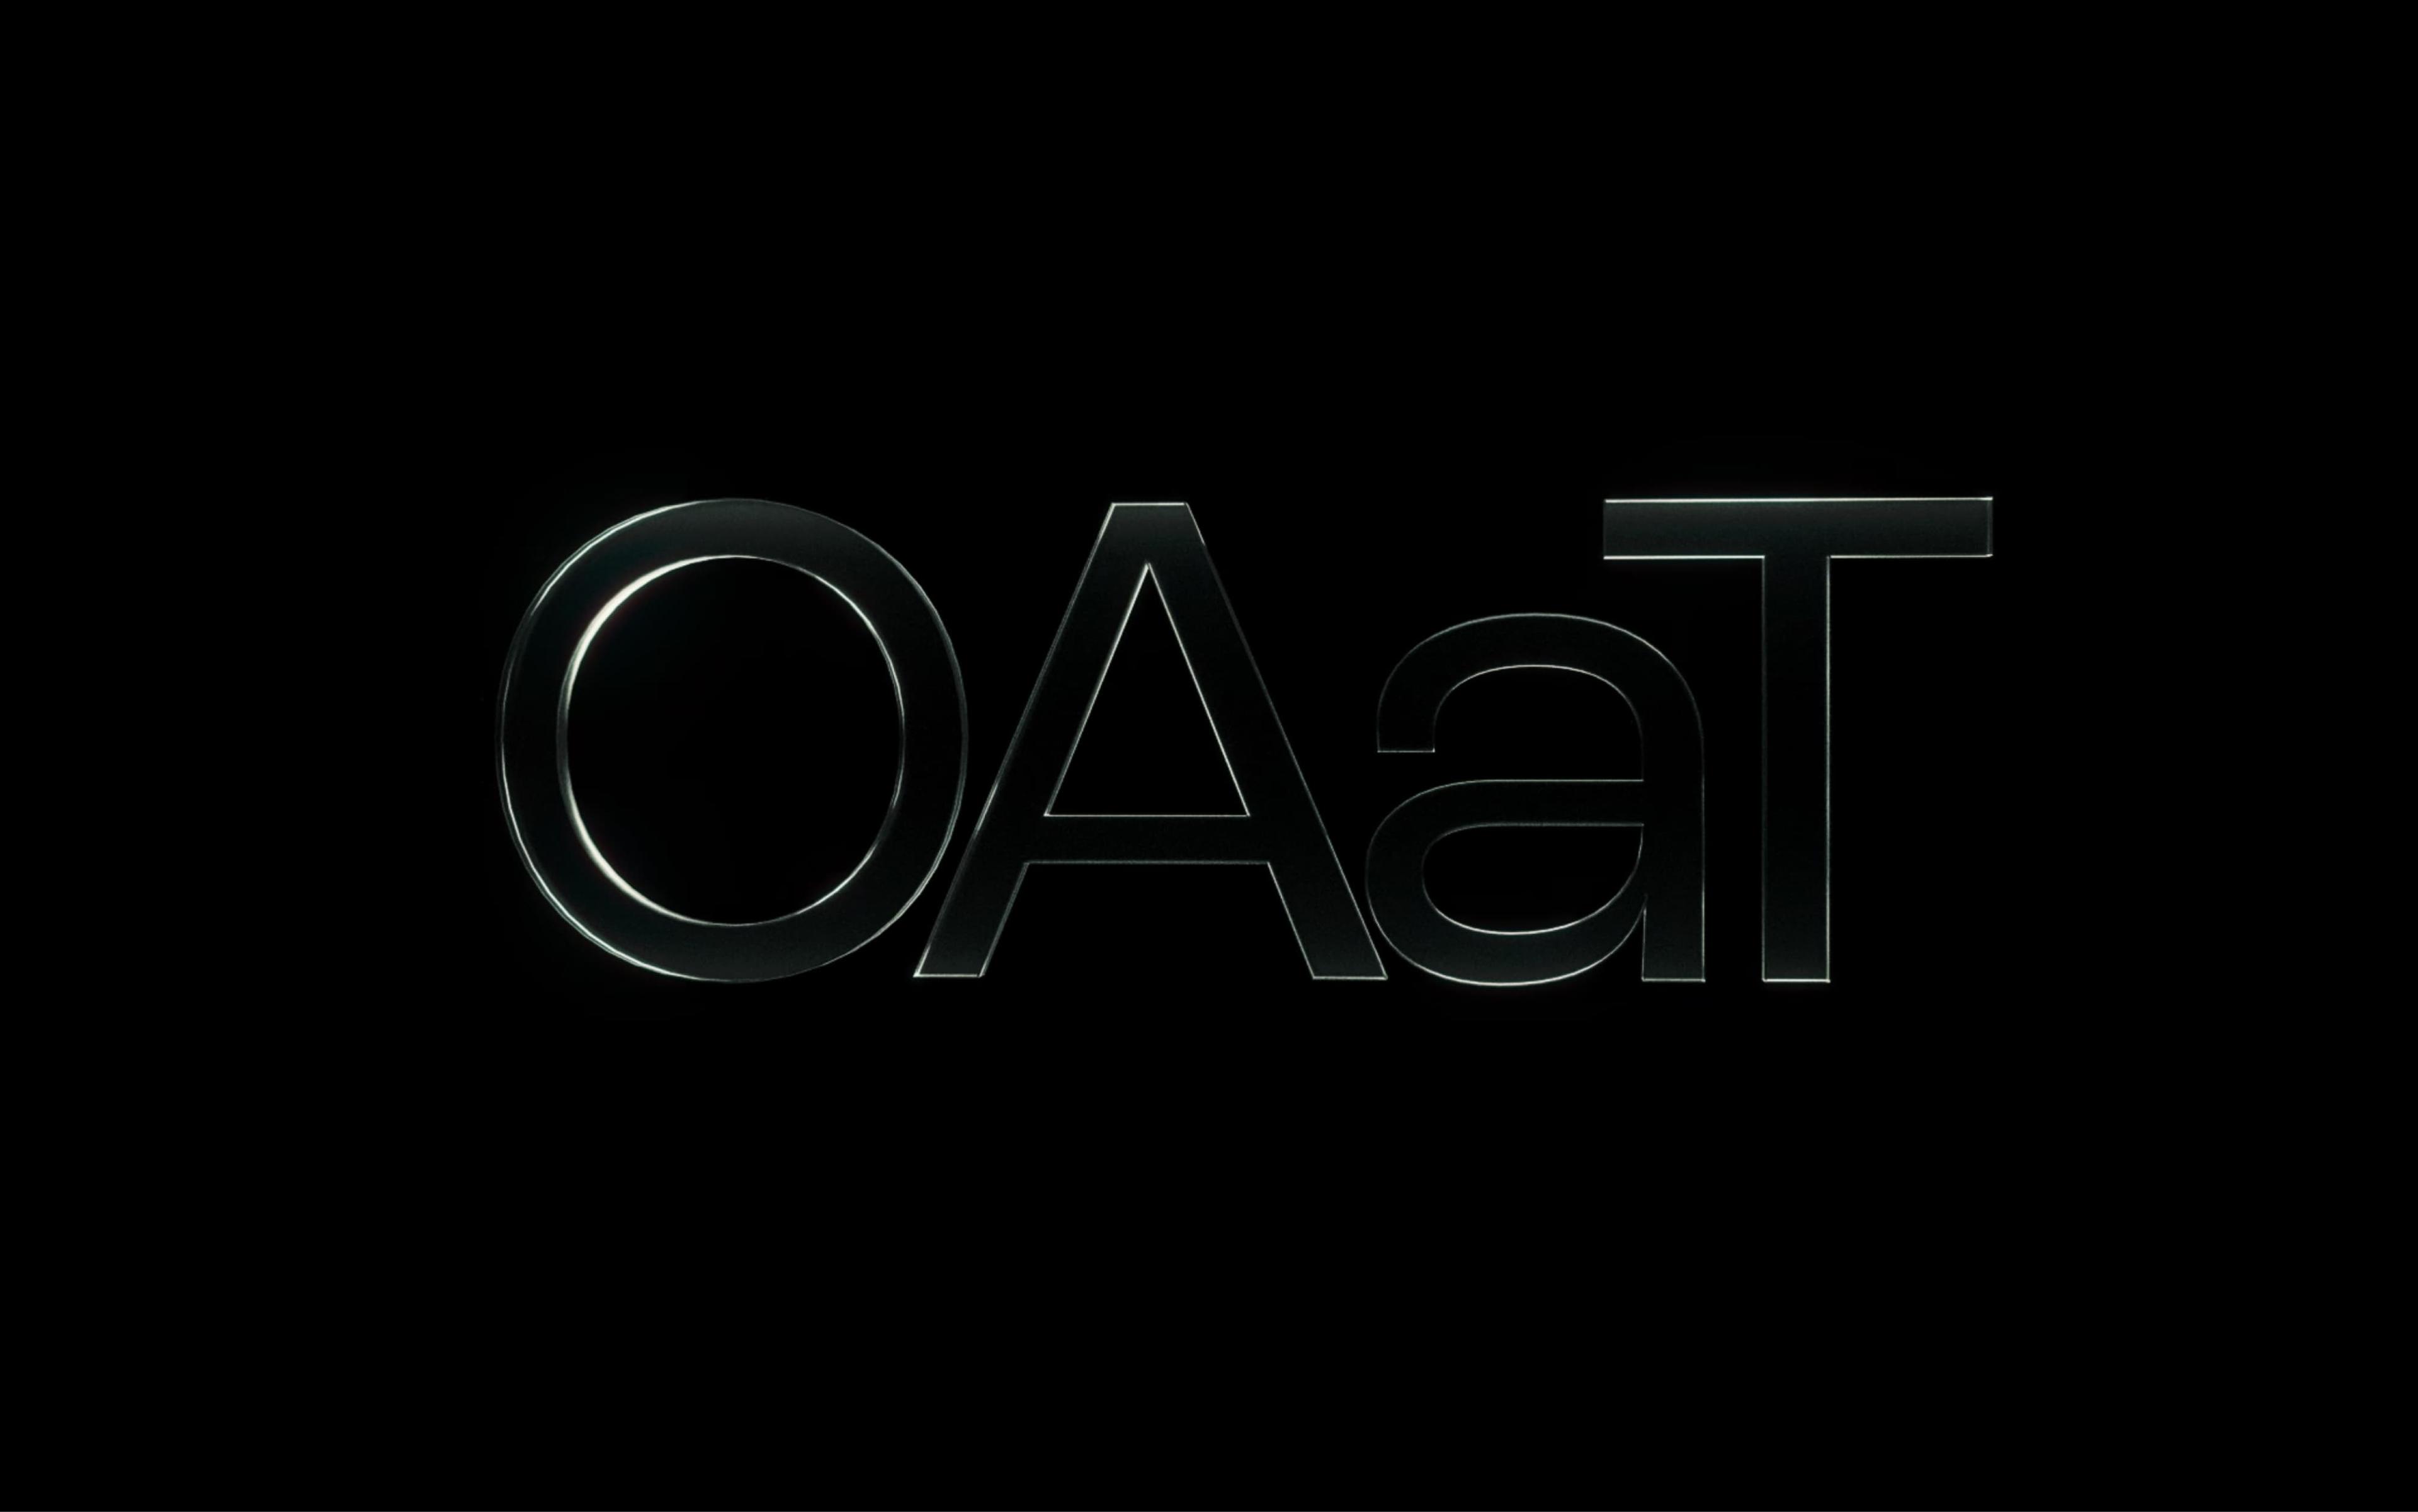 OAaT Studio